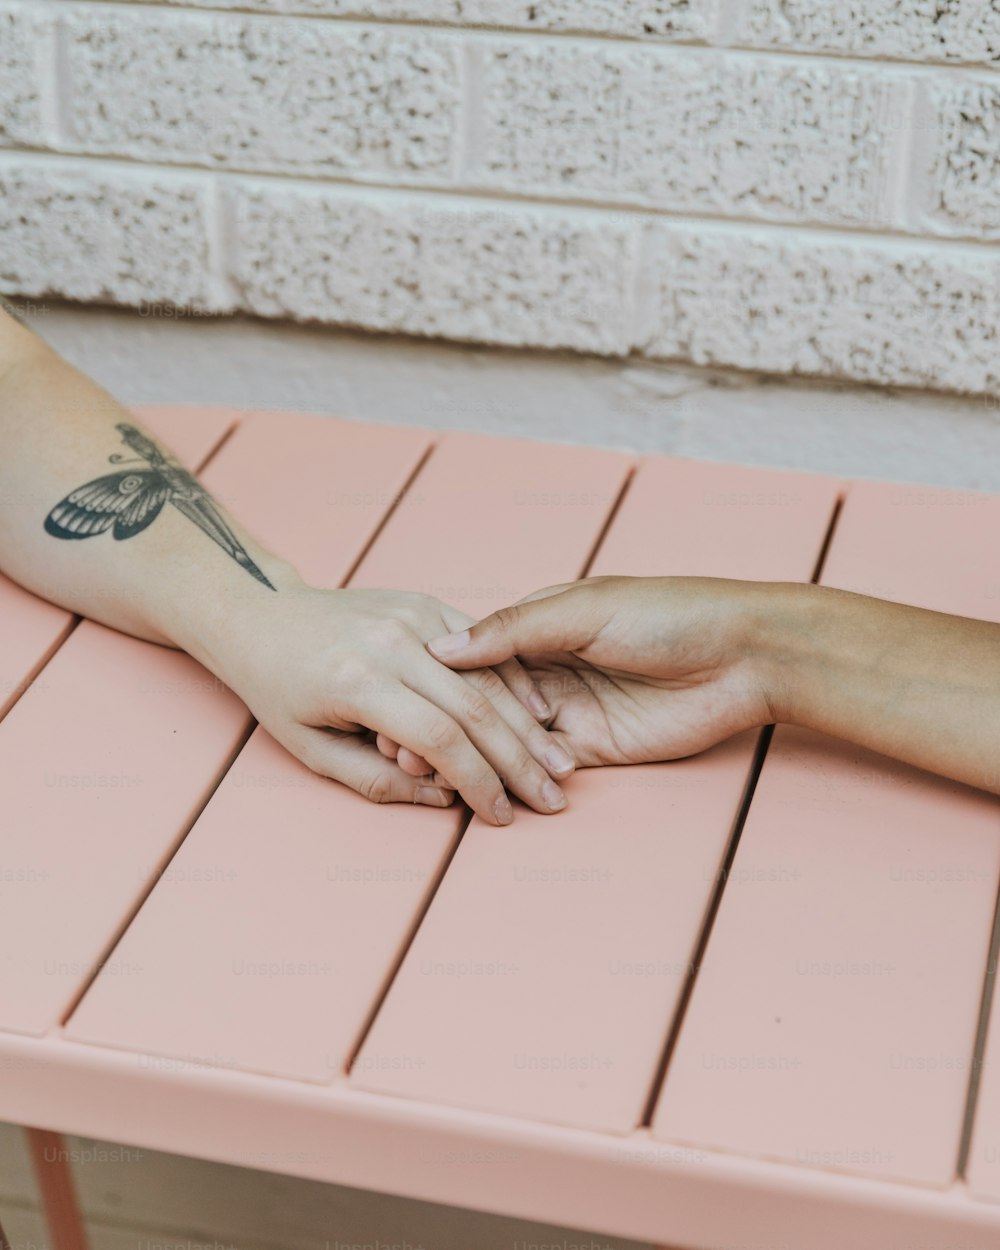 uma pessoa com uma tatuagem de libélula no braço sentada em um banco rosa